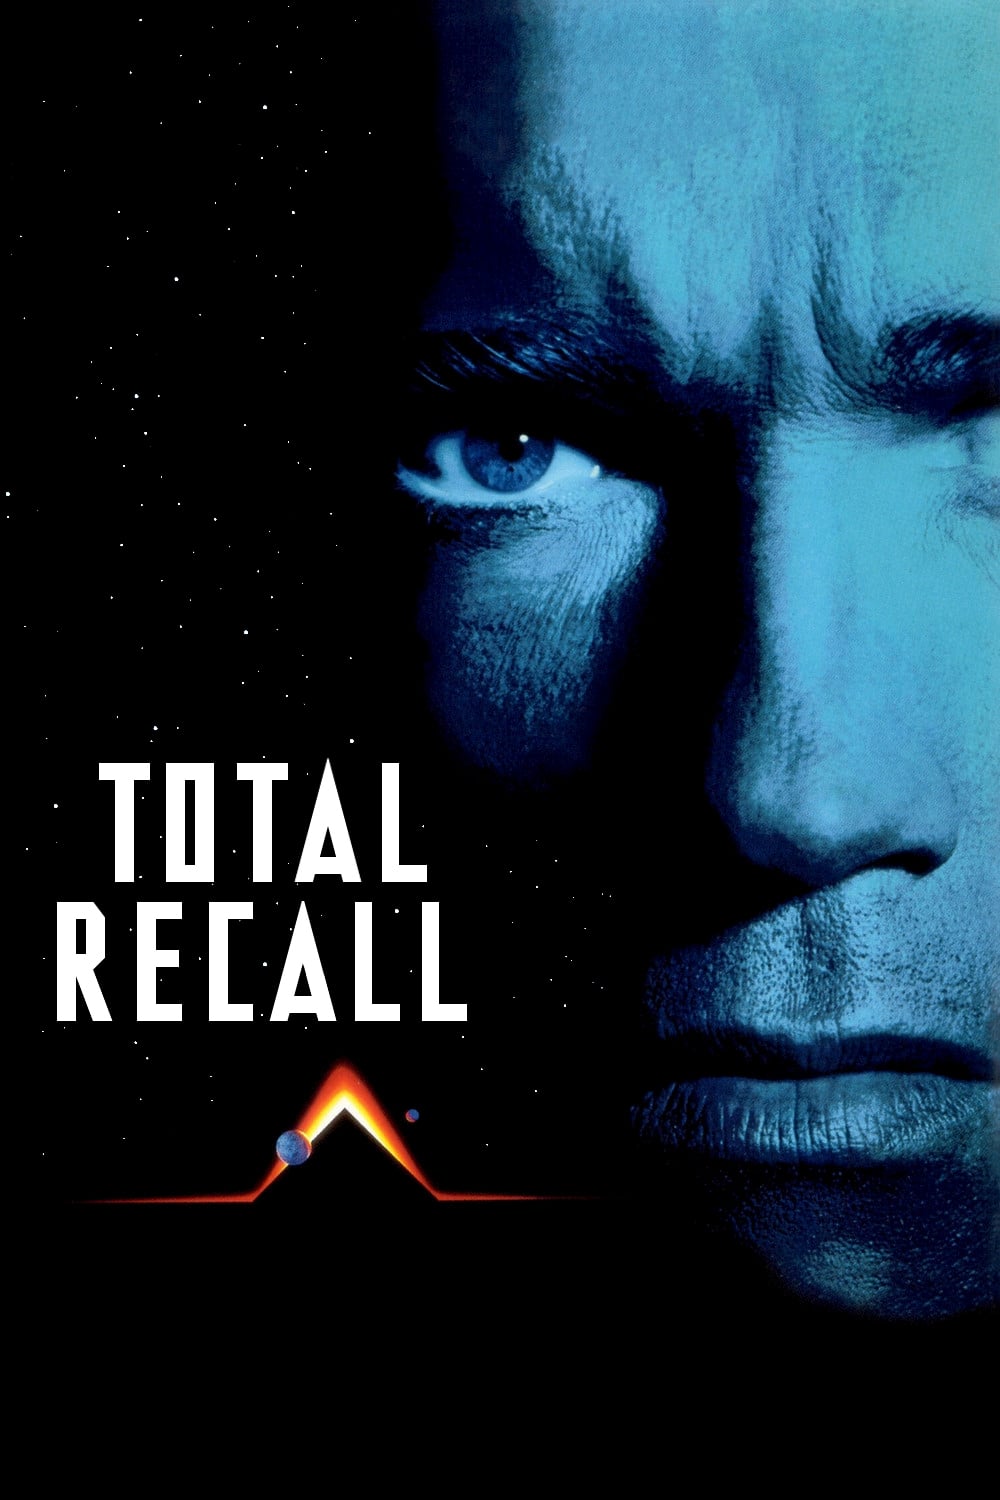 ดูหนังออนไลน์ฟรี Total Recall (1990) คนทะลุโลก